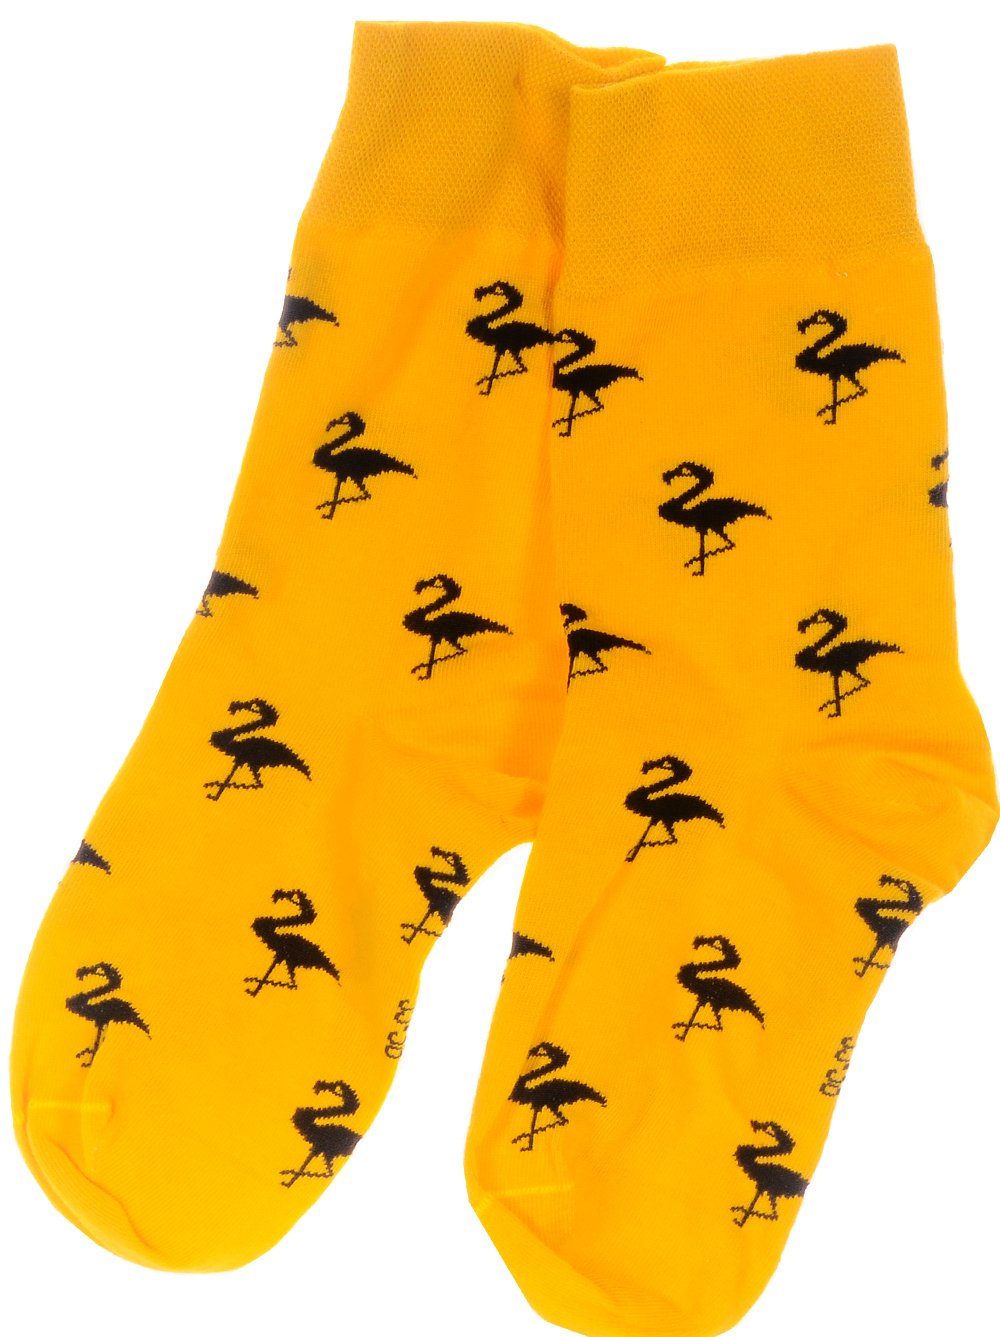 Martinex Socken Freizeitsocken 1 Paar Socken bunte witzige Strümpfe 35 38 39 42 43 46 gelb, nahtlos, elastisch, atmungsaktiv